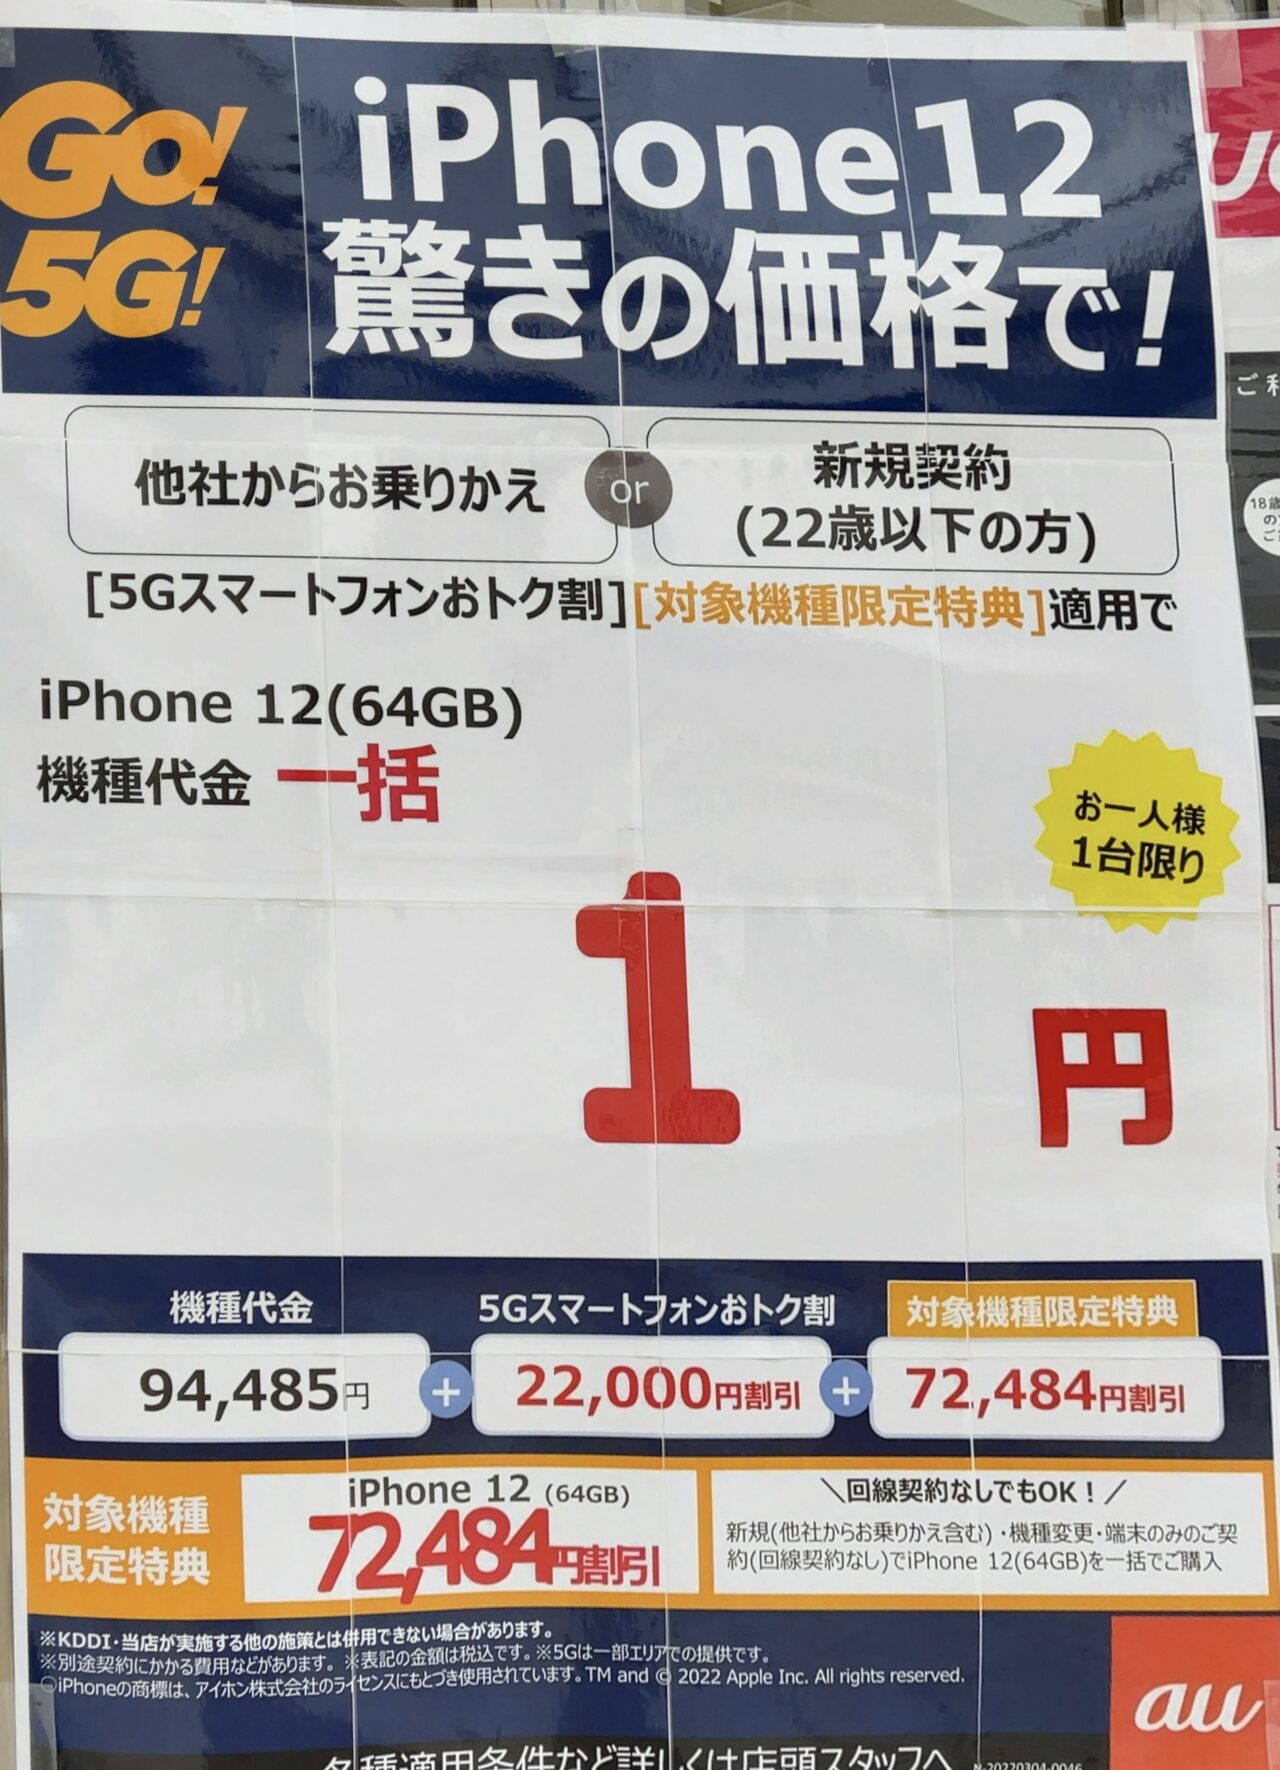 Lô hàng iPhone 12 giá rẻ tại Việt Nam có nguồn gốc thật sự từ đâu? - Ảnh 2.